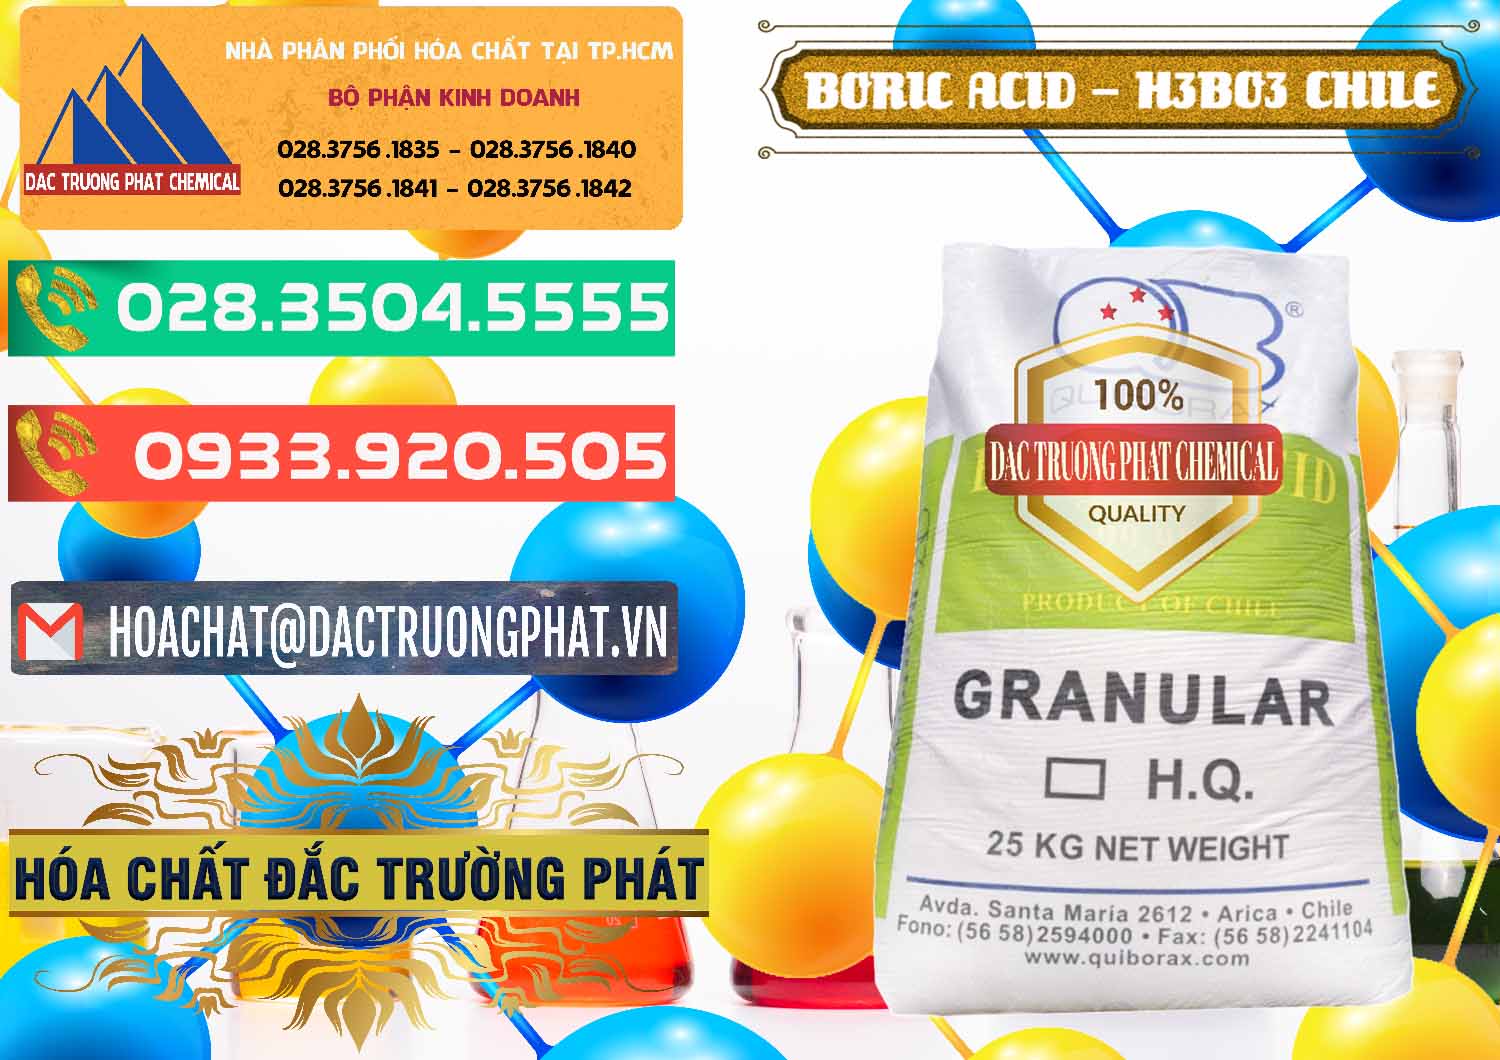 Đơn vị chuyên bán & phân phối Acid Boric – Axit Boric H3BO3 99% Quiborax Chile - 0281 - Chuyên cung cấp - kinh doanh hóa chất tại TP.HCM - congtyhoachat.com.vn